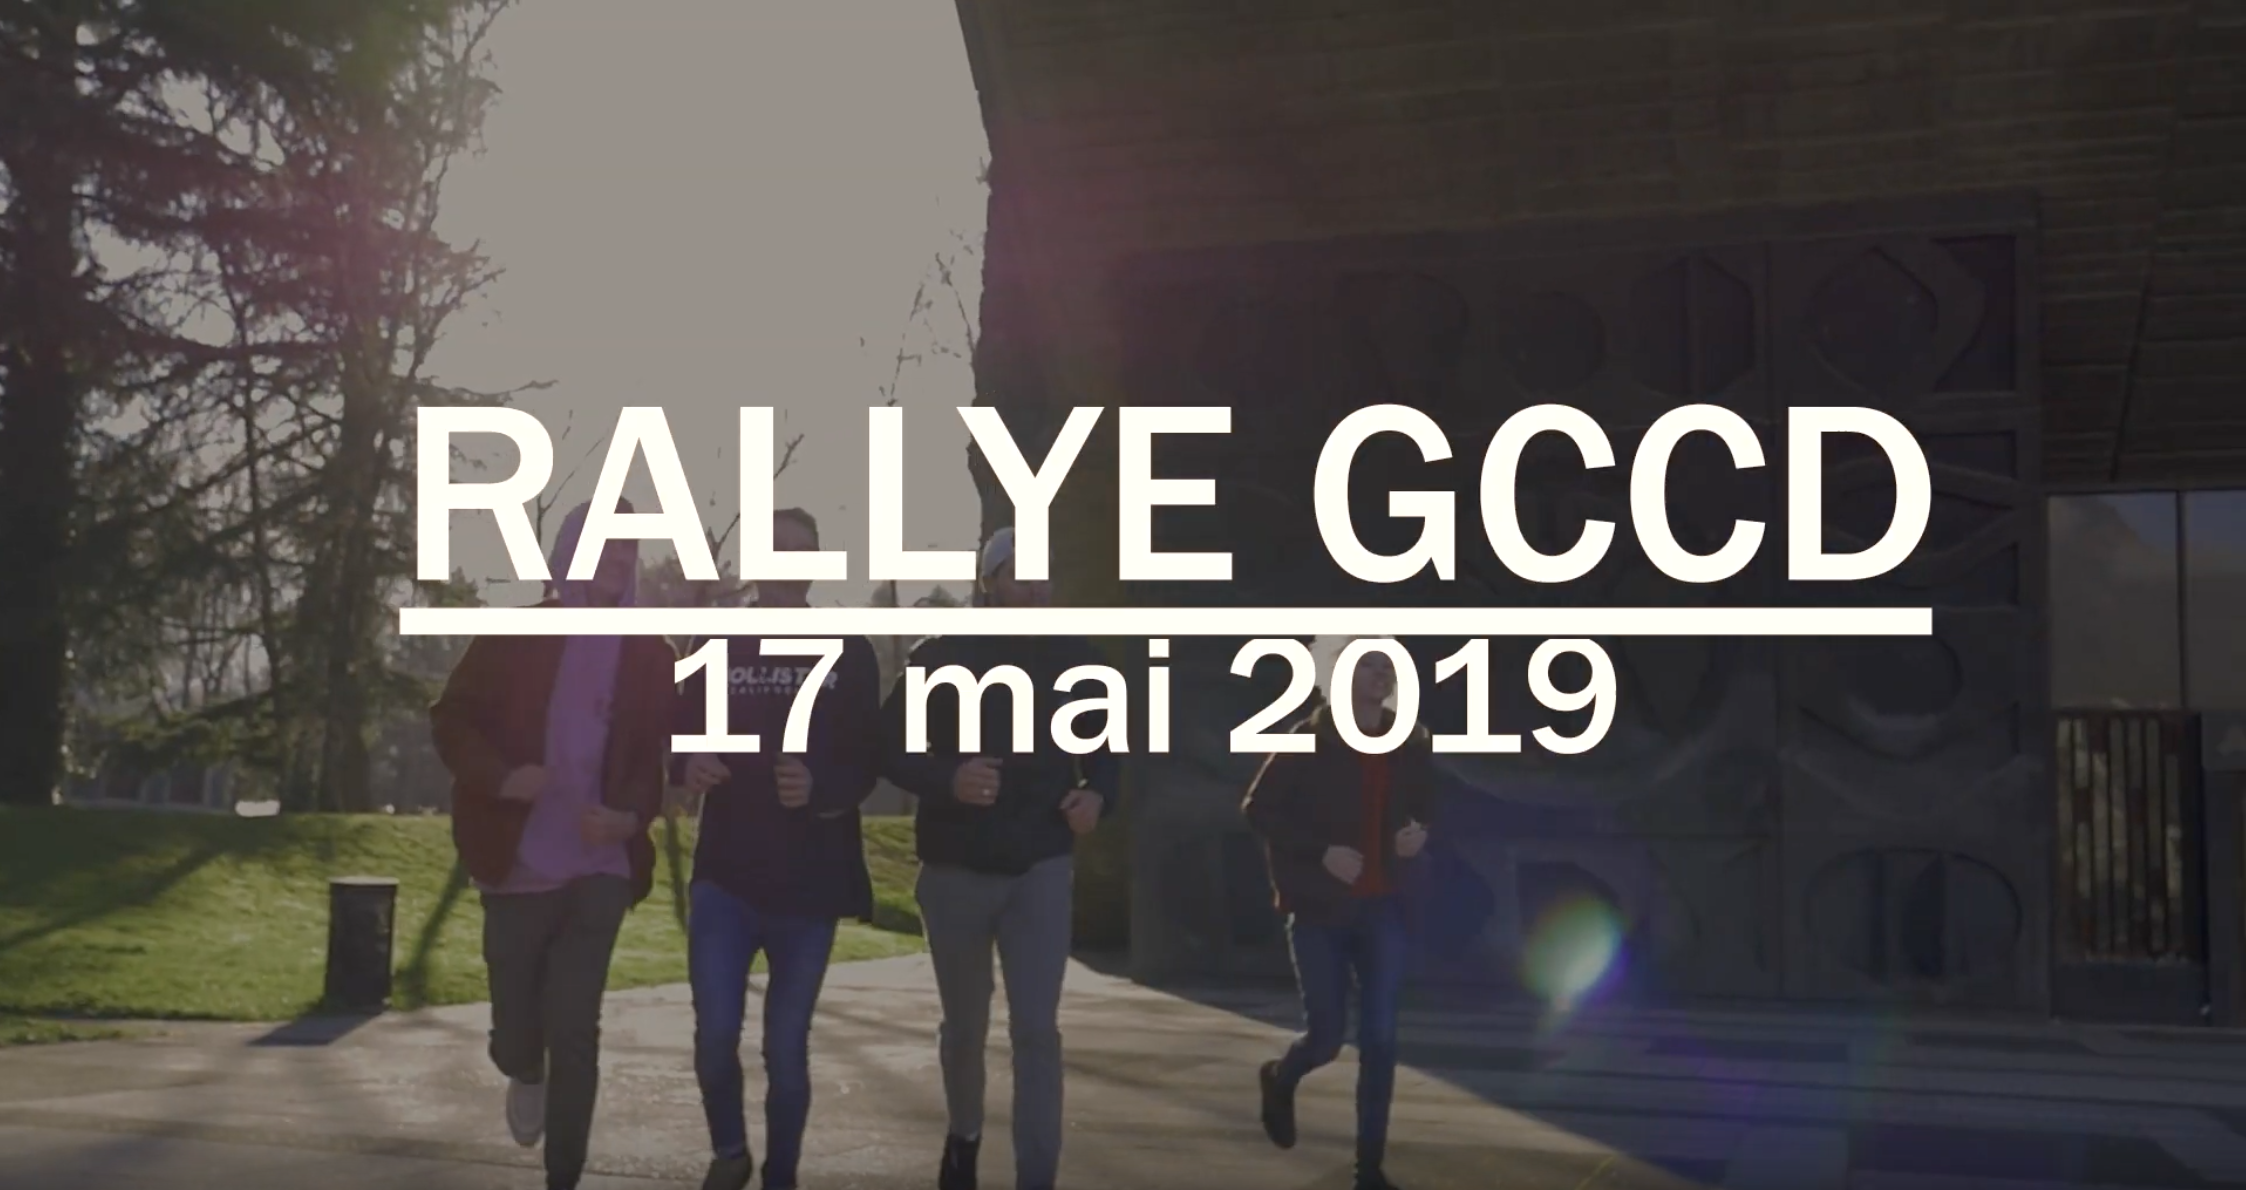 Rallye GCCD, Teaser de Communication